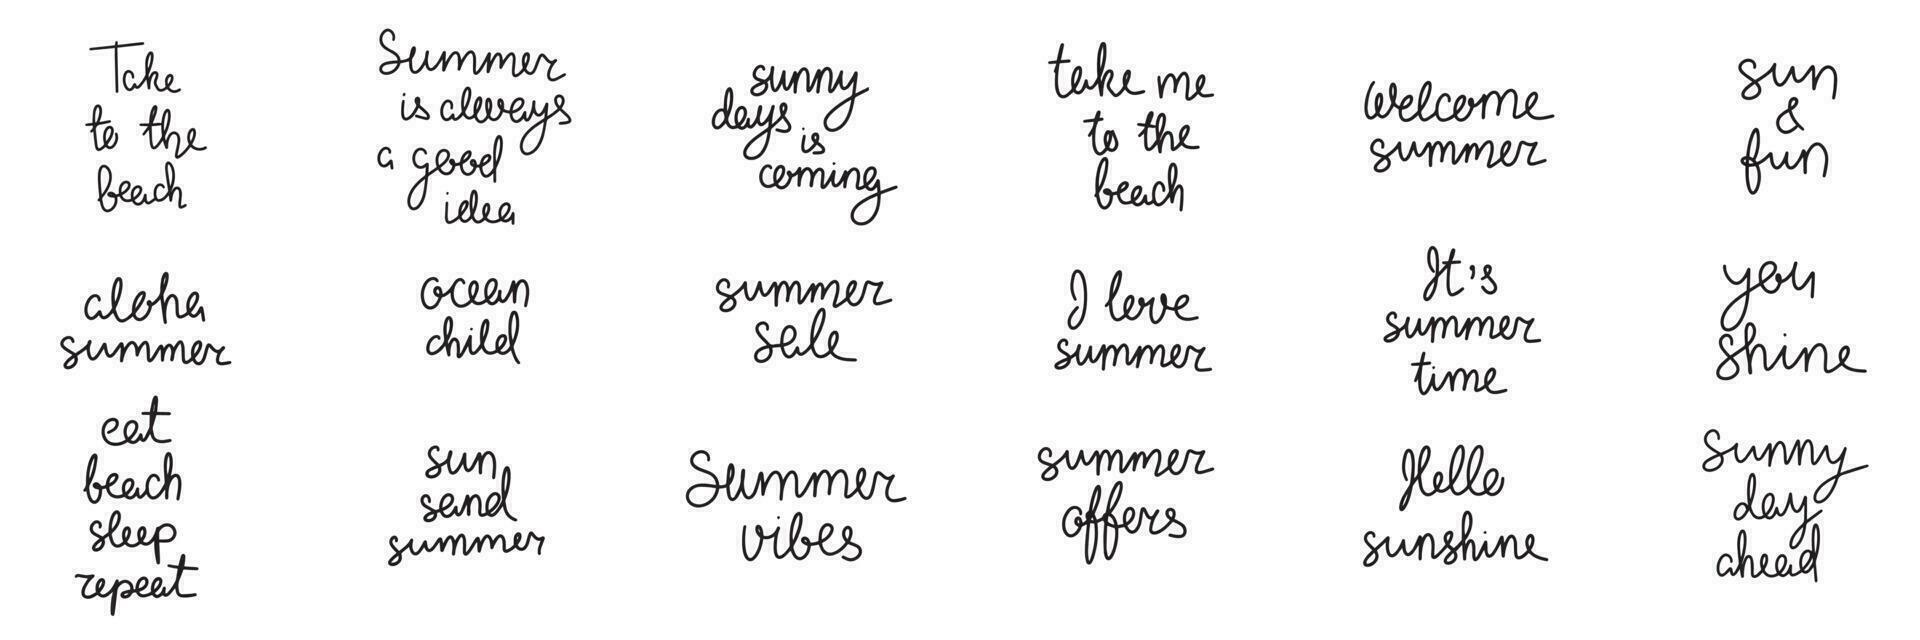 zomerlabels, logo's, handgetekende tags en elementen voor zomervakantie, reizen, strandvakantie, zon. vectorillustratie. vector